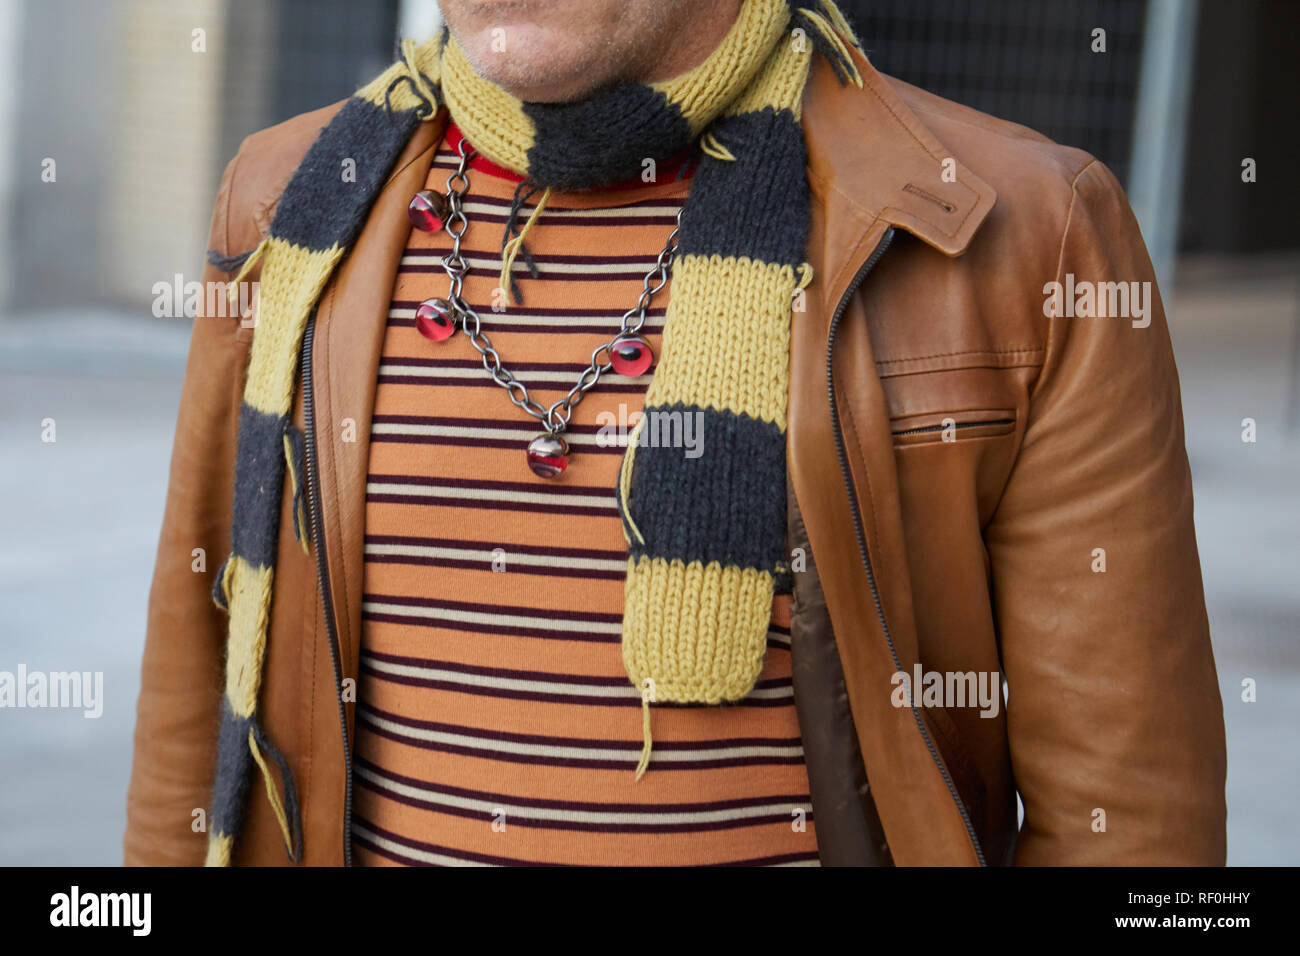 Mailand, Italien - Januar 12, 2019: Mann mit gelben und schwarzen Schal und gestreift orange Hemd vor Neil Barrett fashion show, Mailand Fashion Week Straße Stockfoto